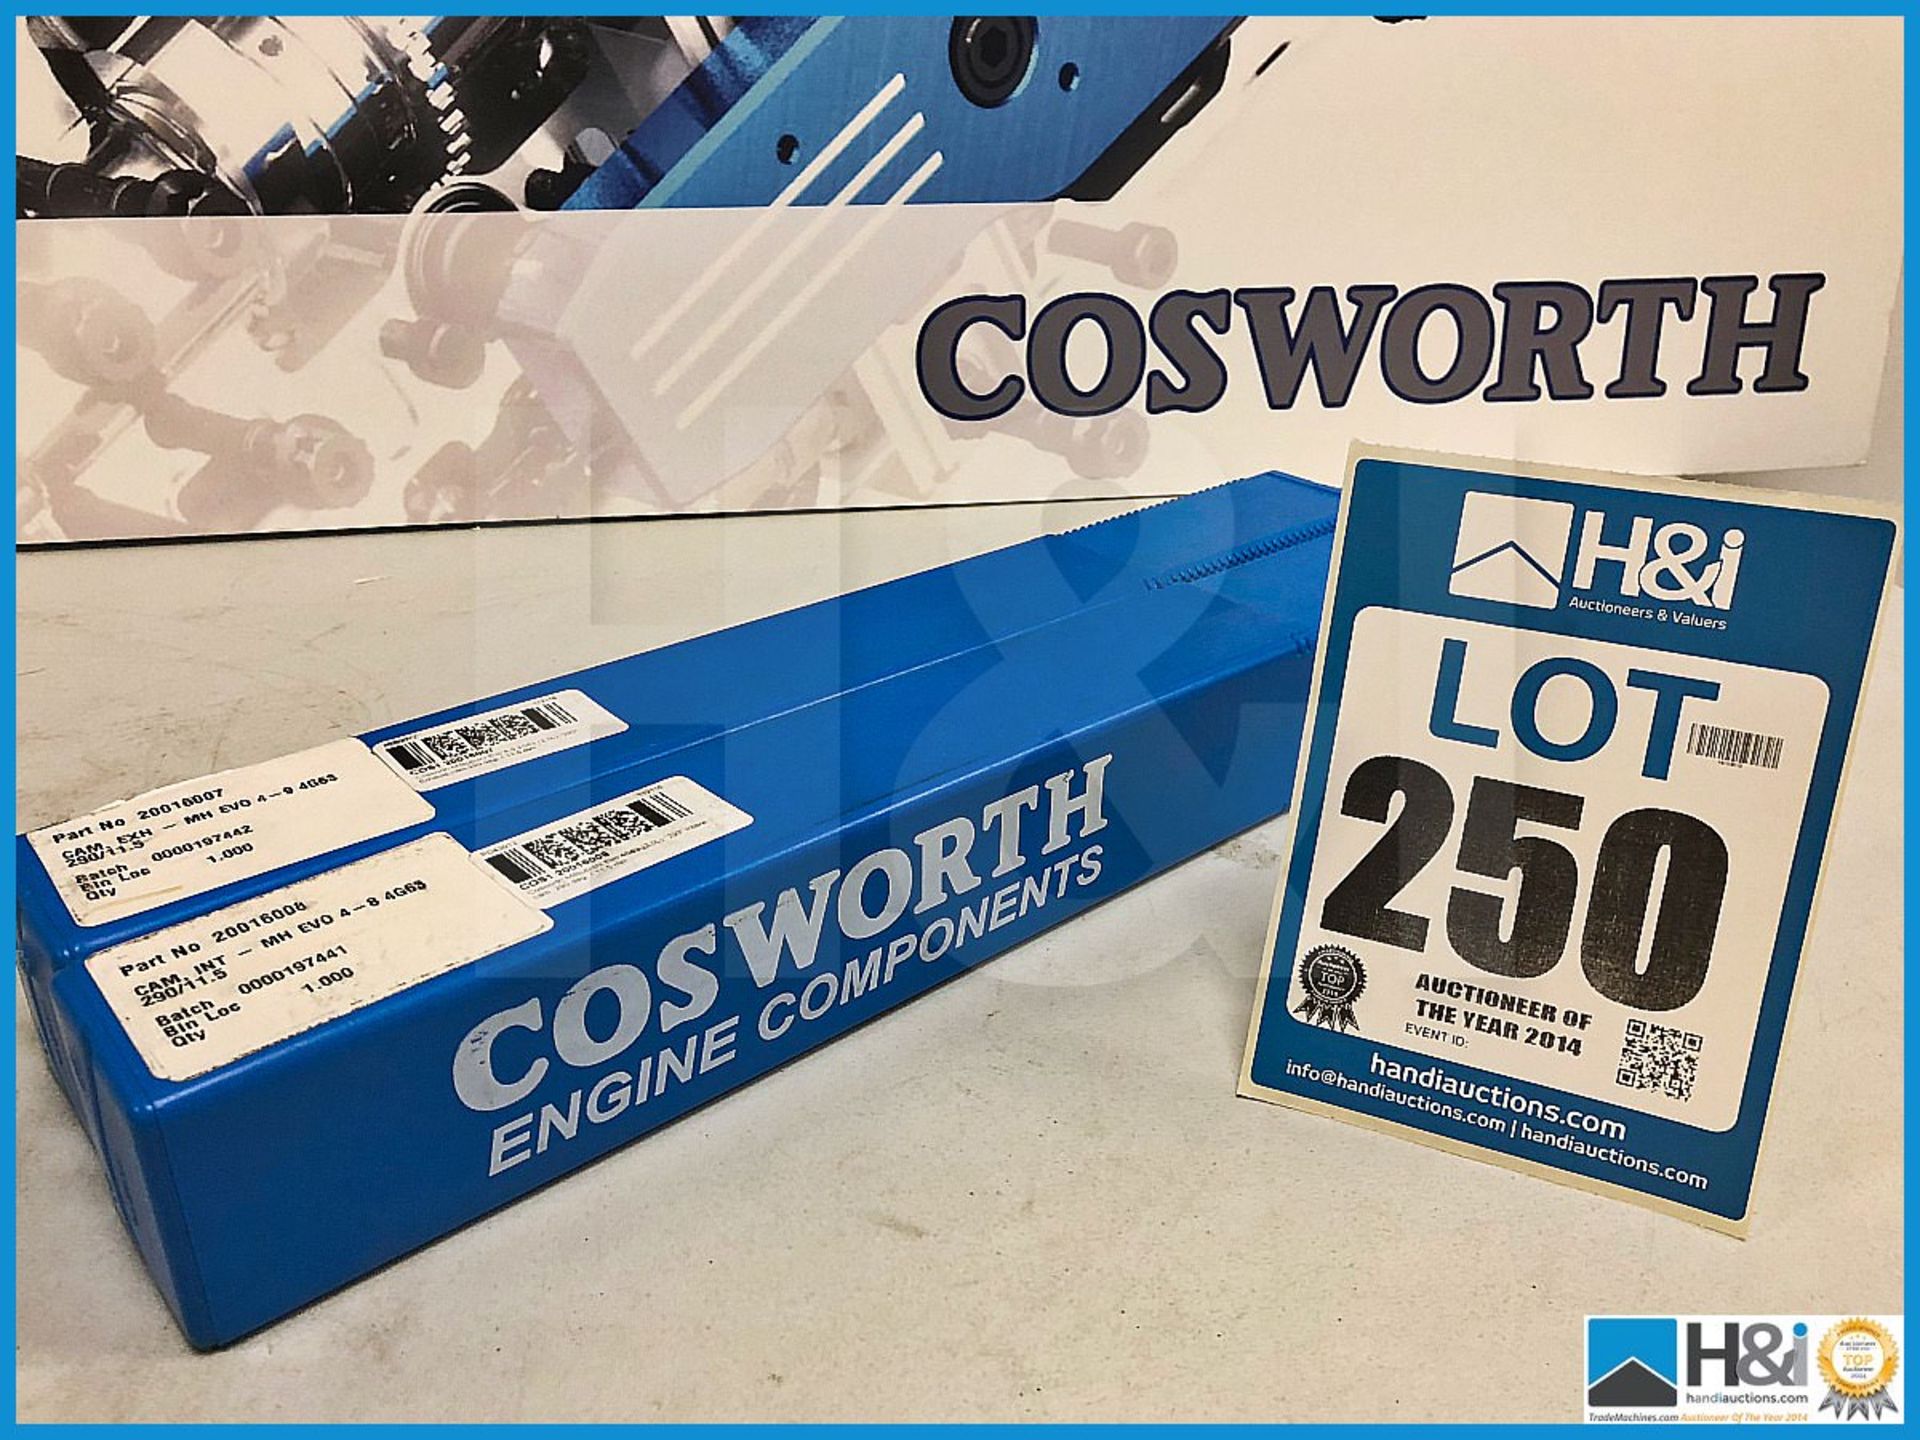 2 x Cosworth Mitsubishi Evo 4-9 4G63 290/11.5. Codes: 20016007 & 20016008